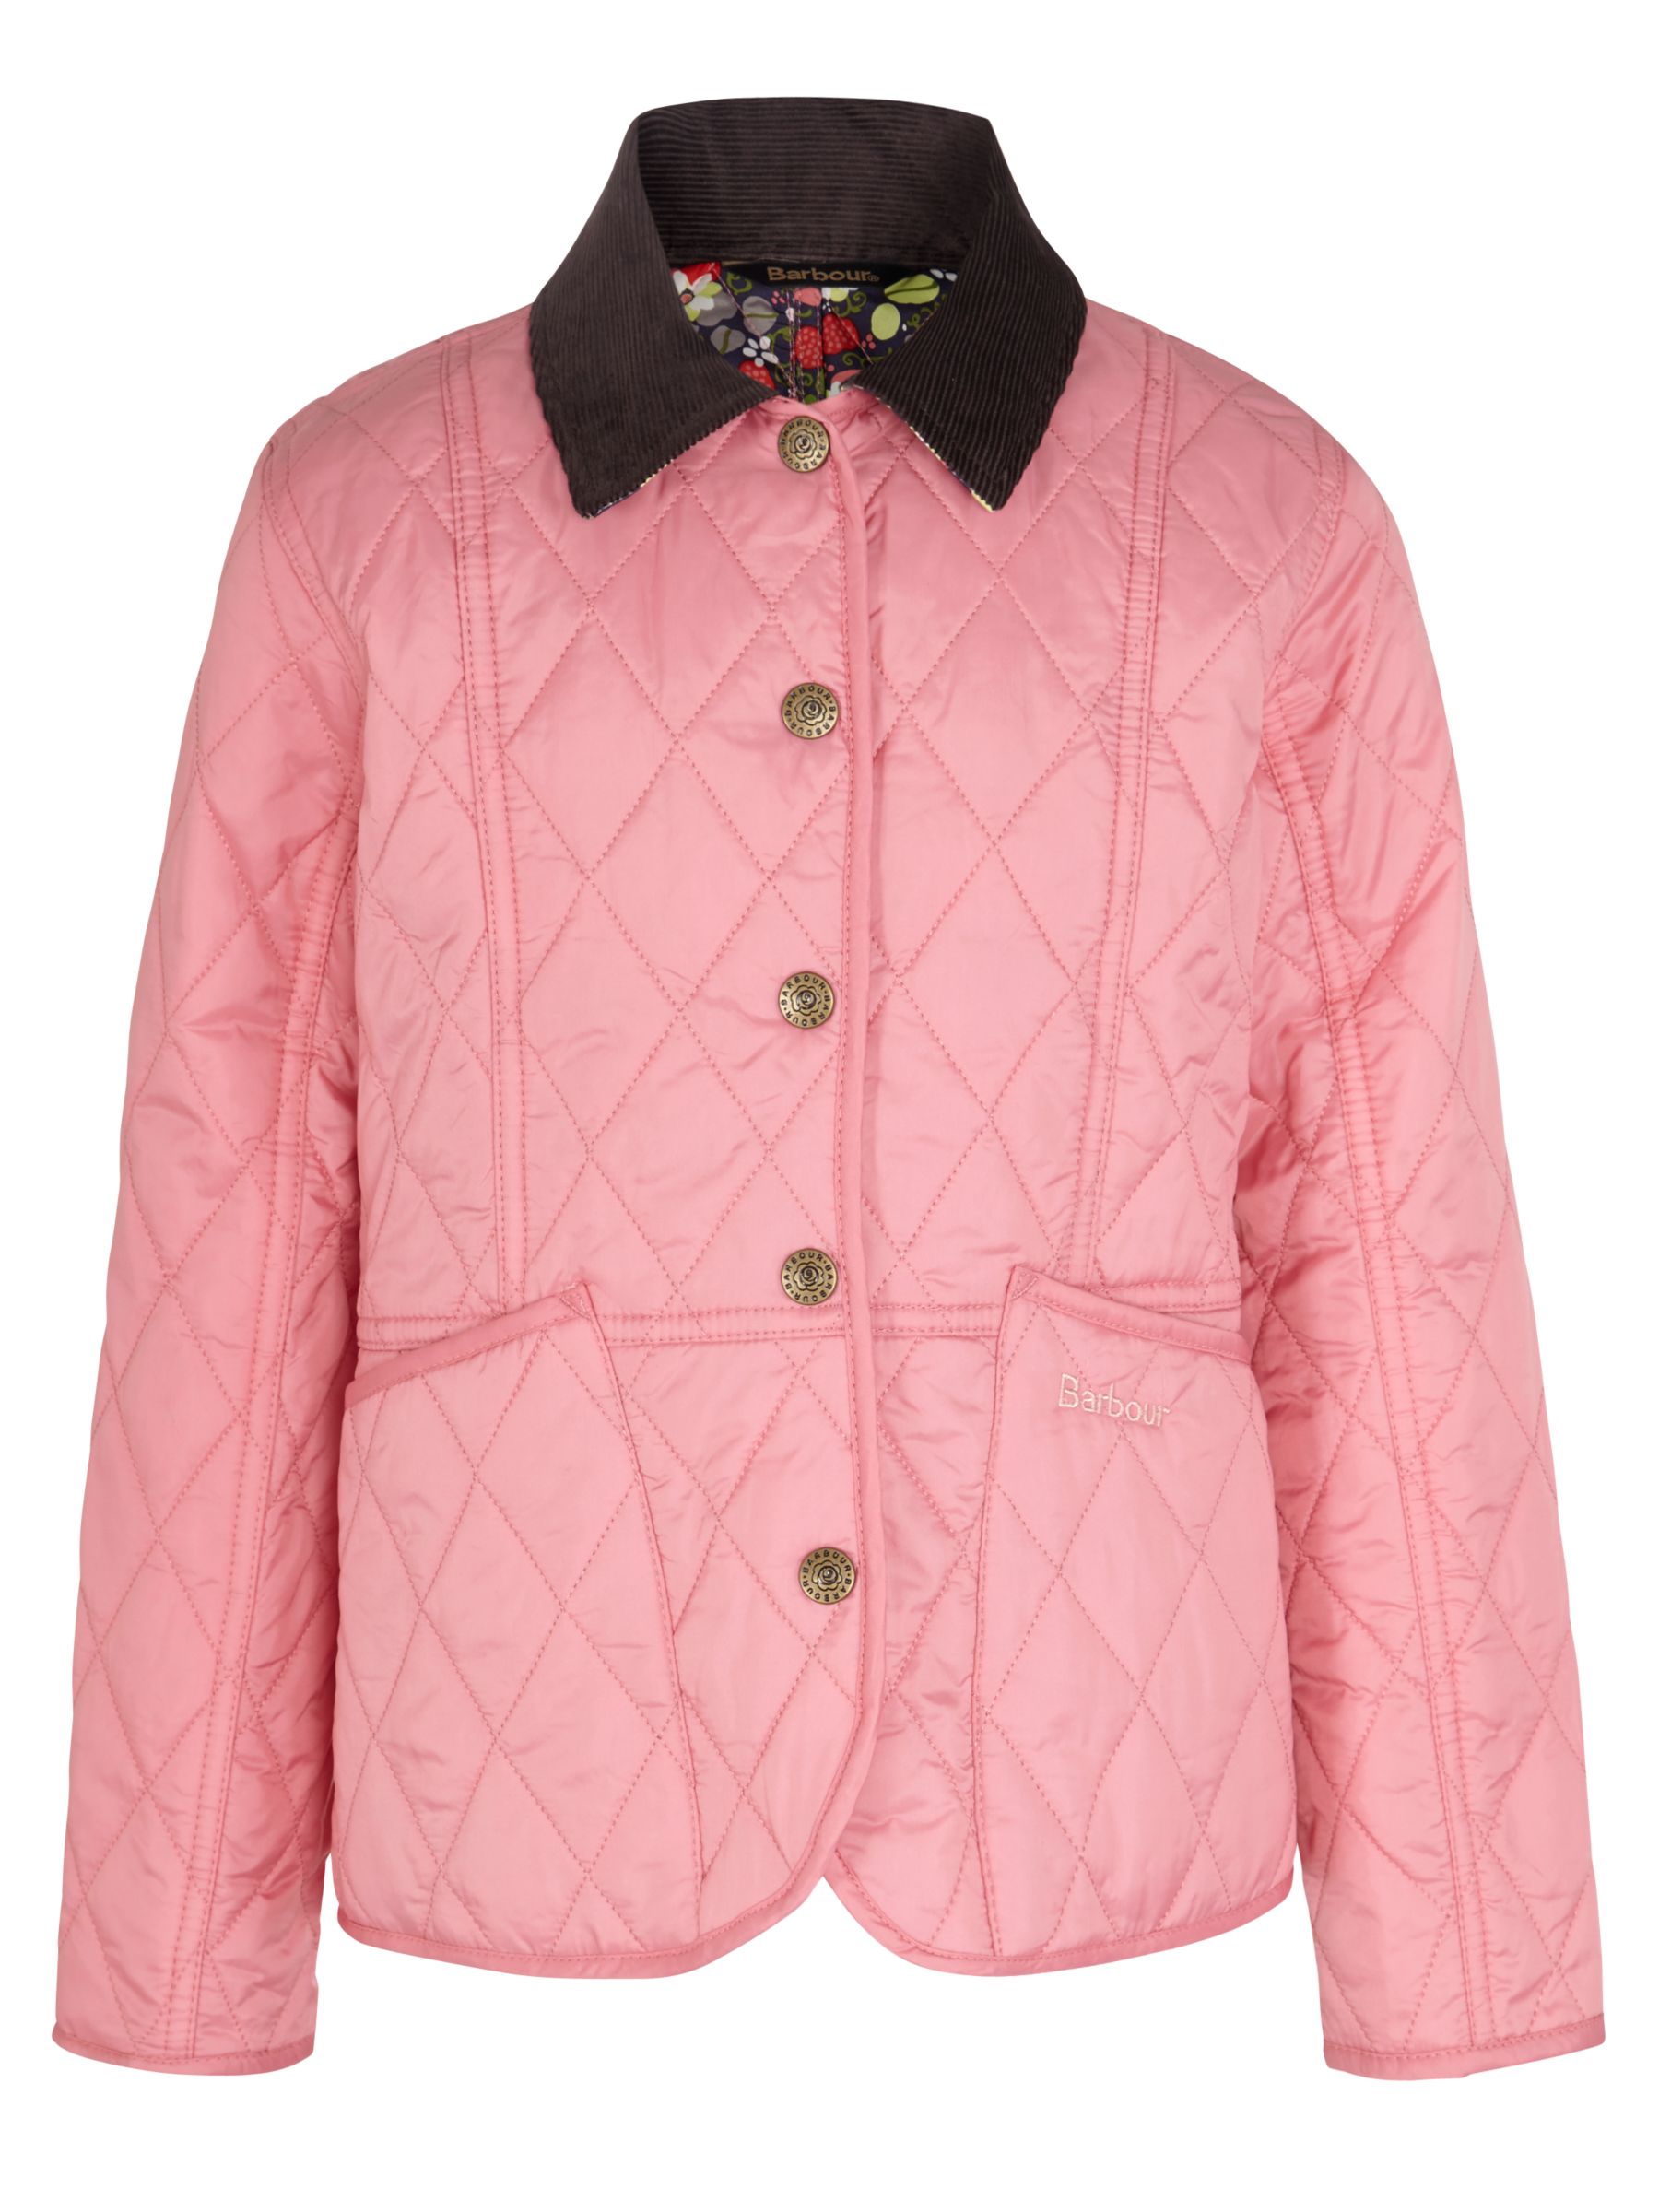 barbour coat pink